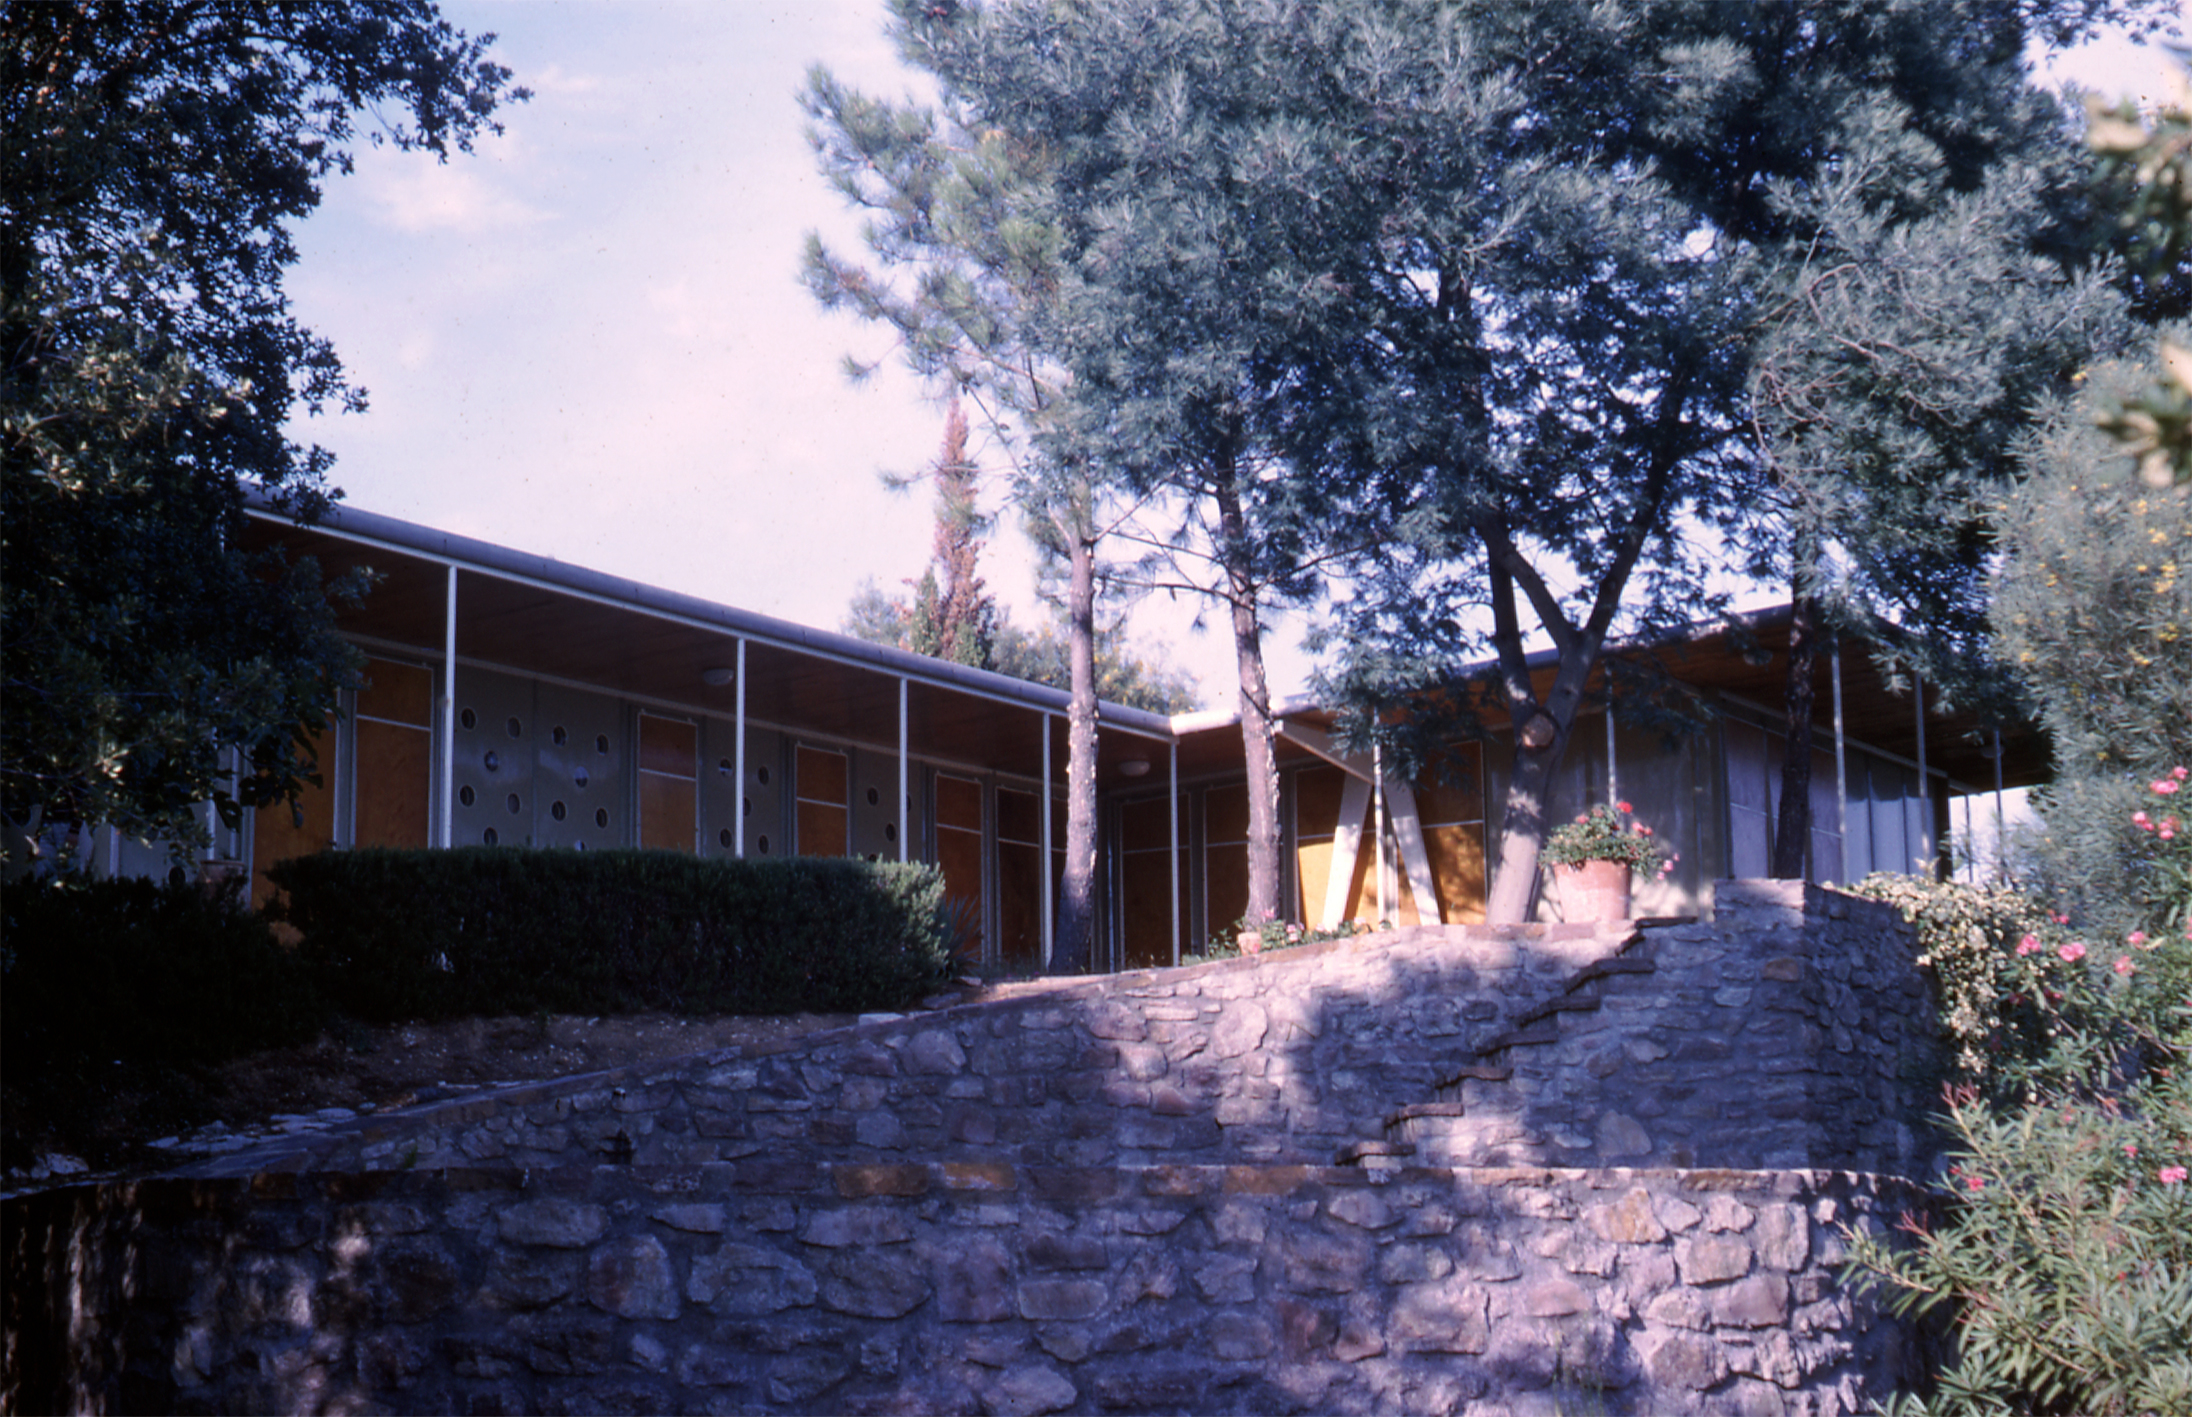 Villa Lopez, Guerrevieille, Sainte-Maxime, 1952-1953 (Jean Prouvé avec R. Lopez et H. Prouvé, arch.).